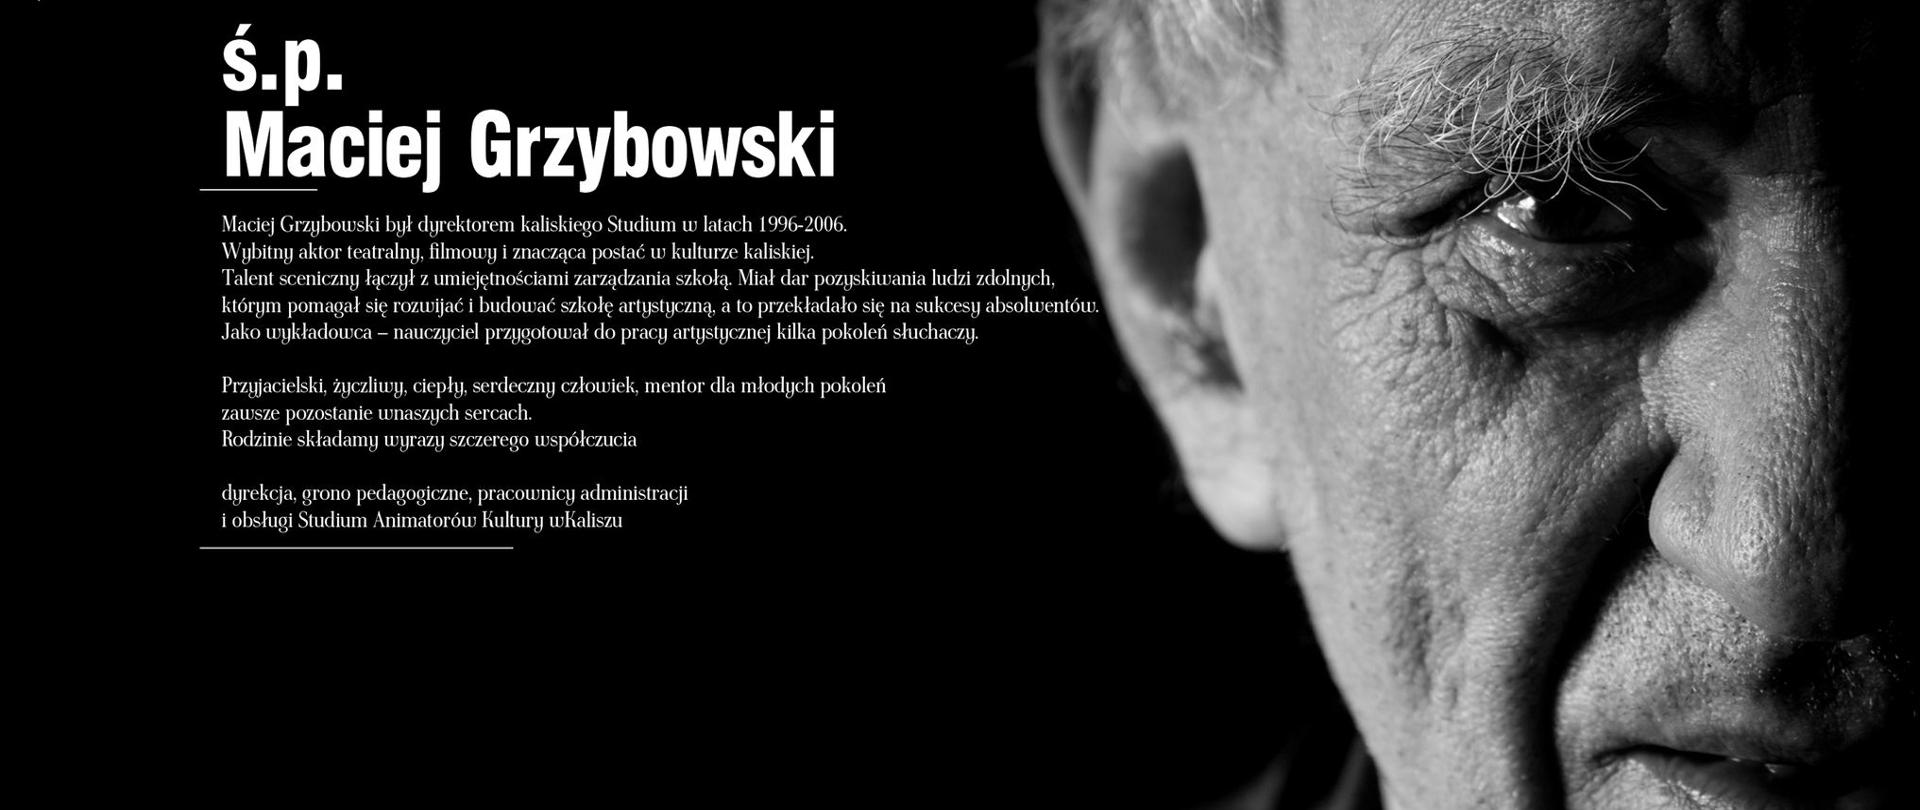 Czarno-białym zdjęciem przedstawiającwe 1 osoba i tekst śp.. Maciej Grzybowski oraz nekrolog i sylwetka zmarłego